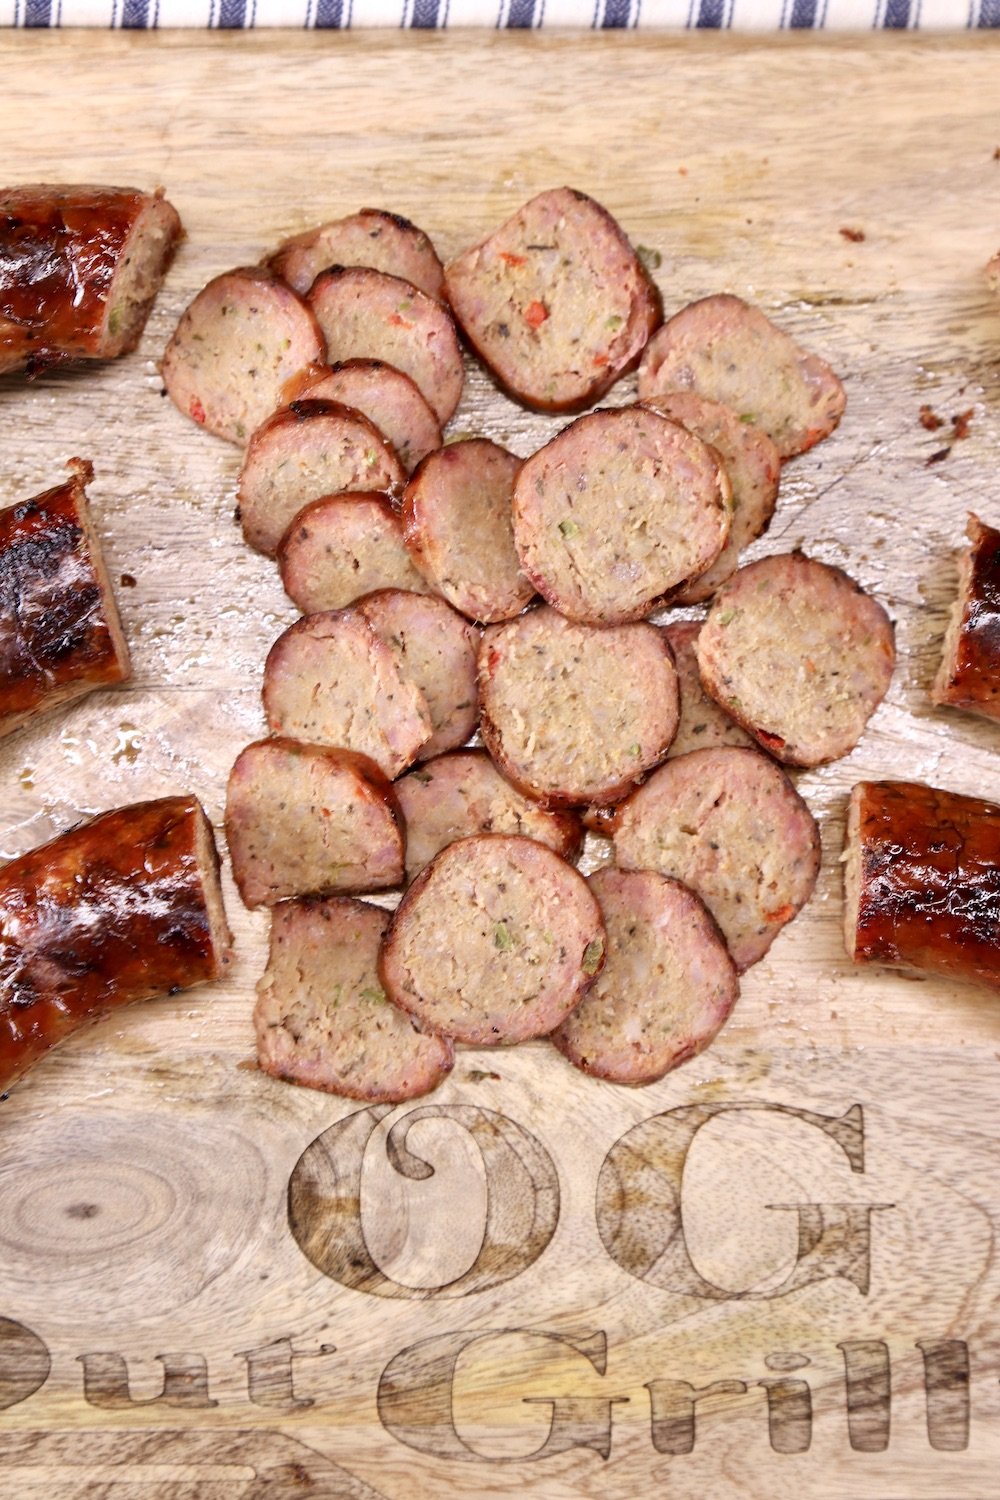 Sliced smoked sausage